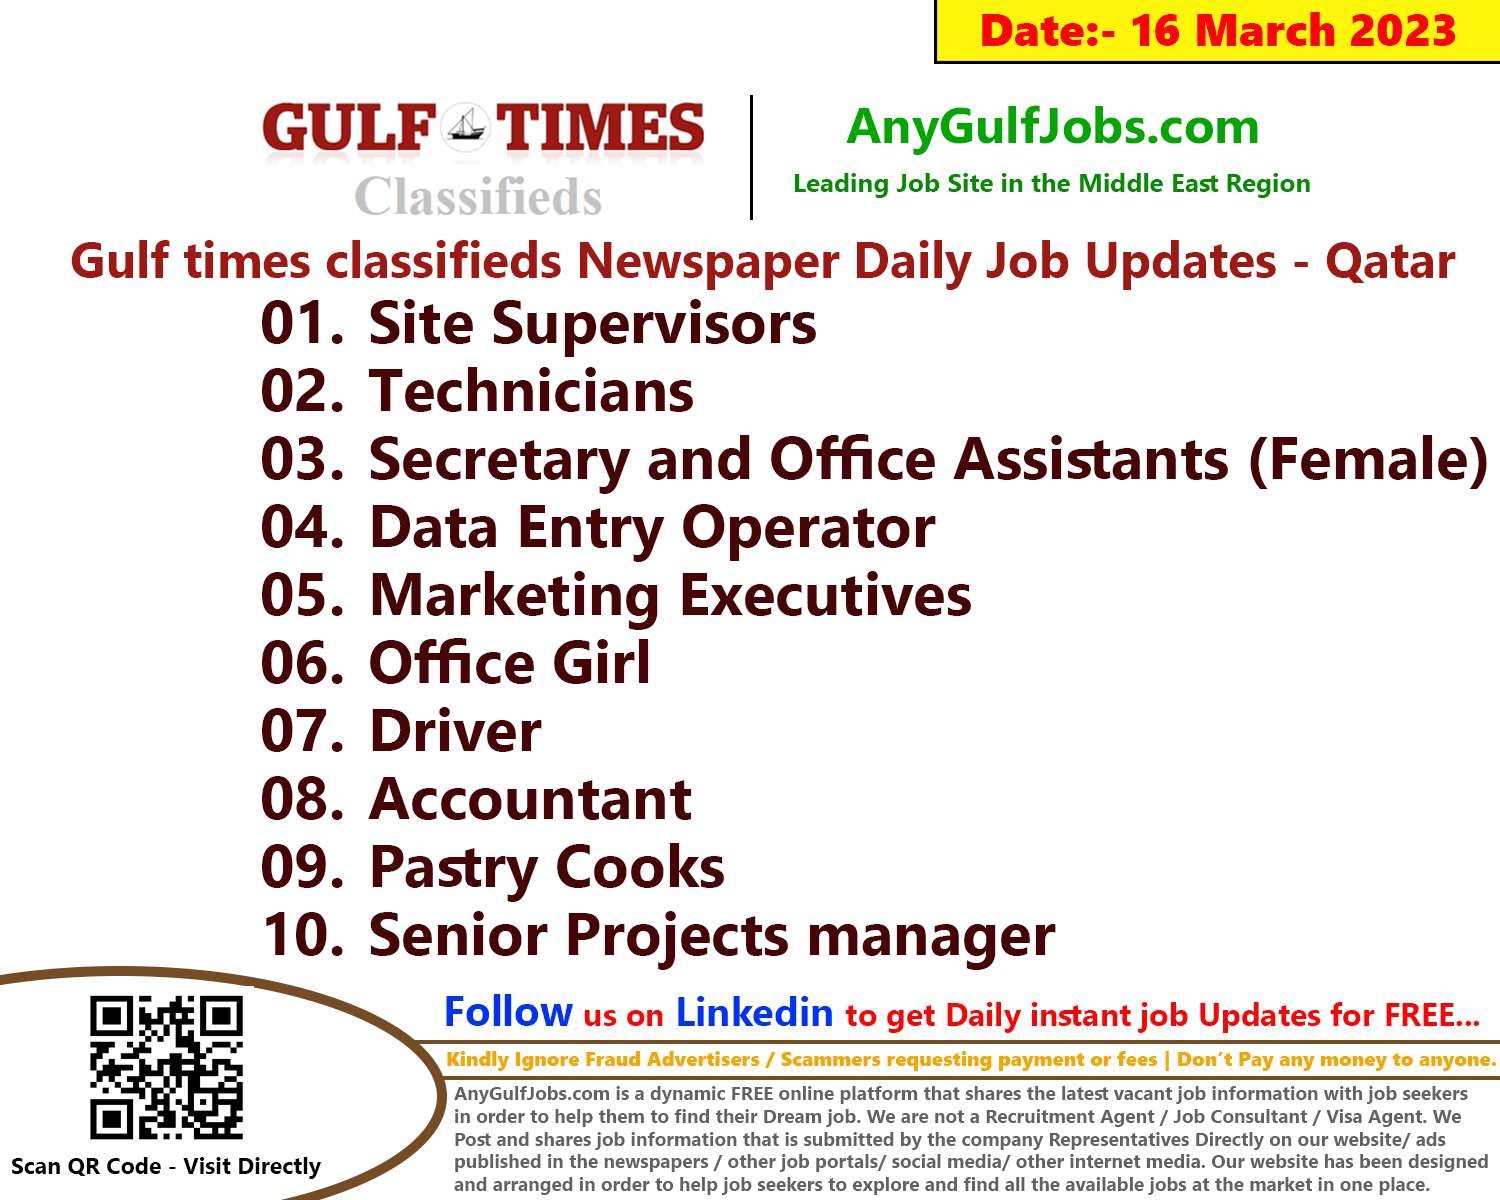 Gulf times classifieds Job Vacancies Qatar - 16 March 2023